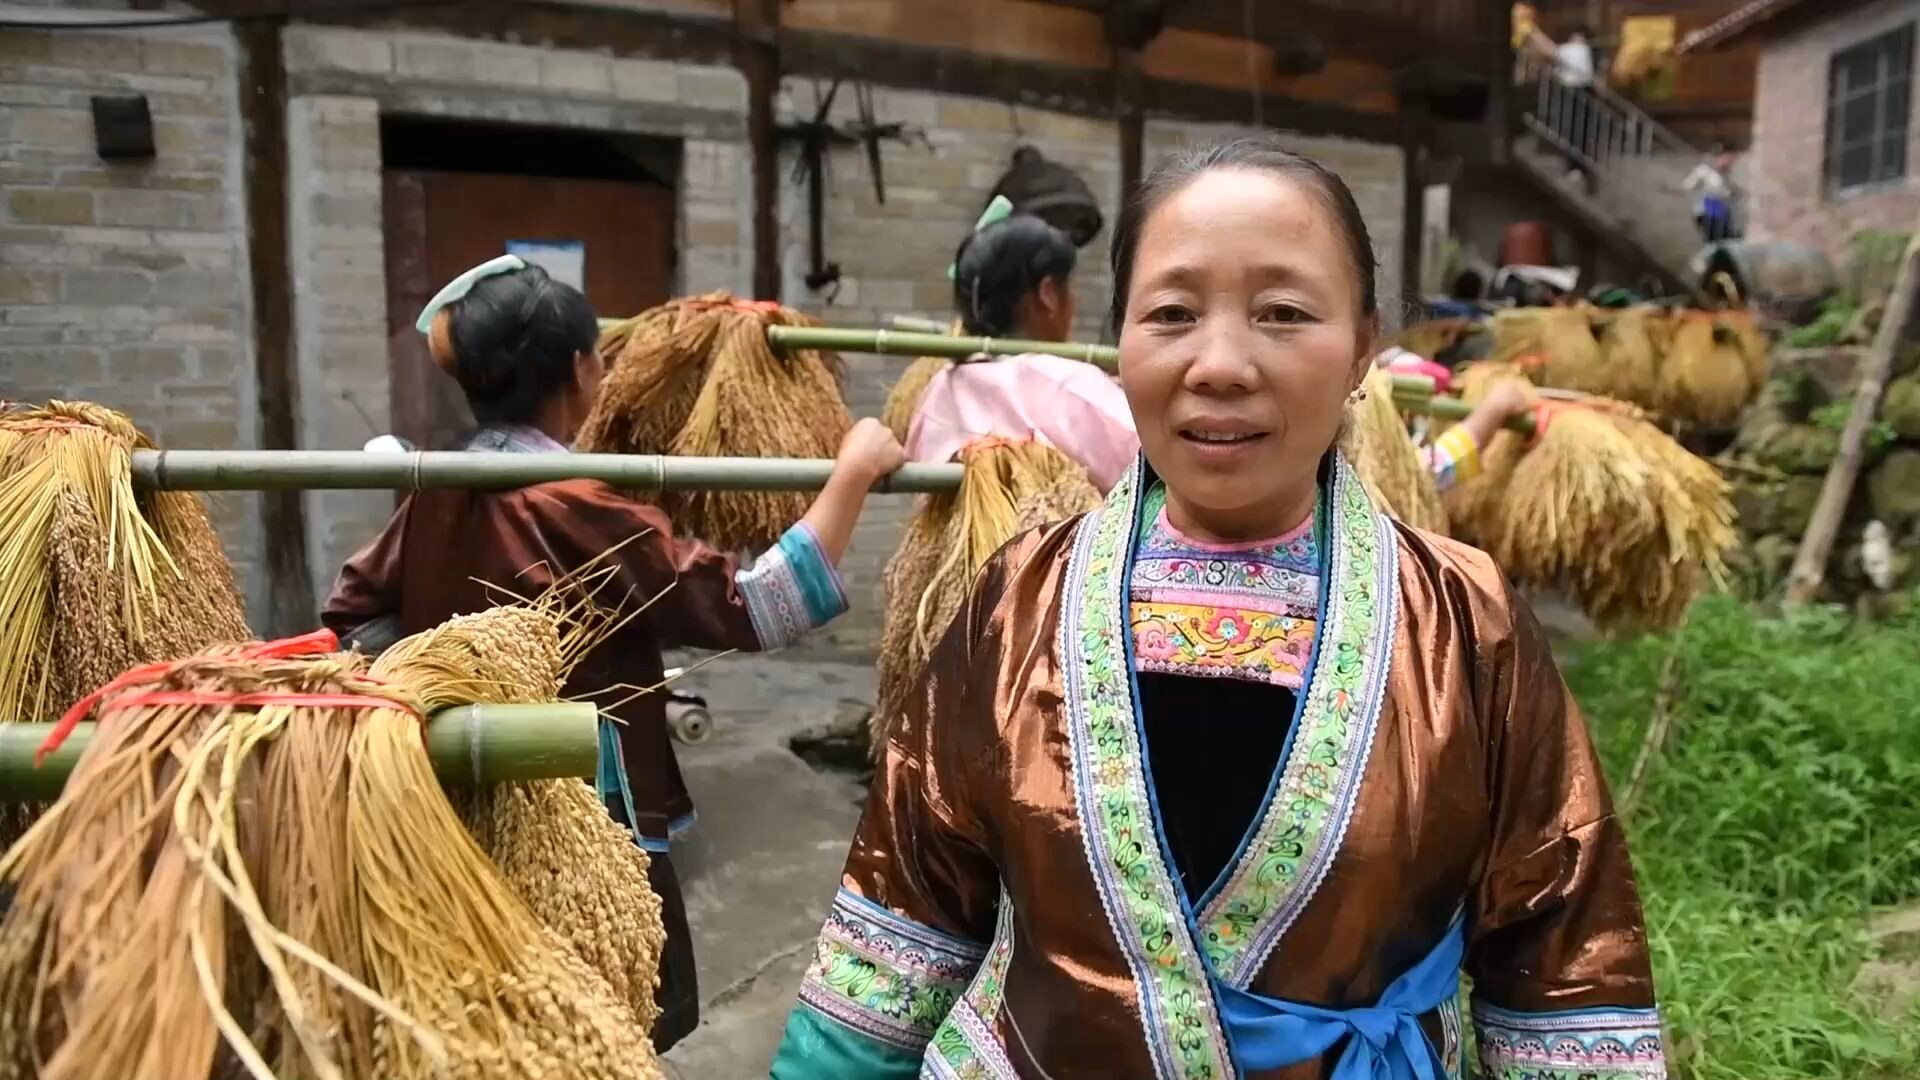 สืบทอด 200 ปี! วัฒนธรรมมอบ 'ของขวัญแพงสุด' ของหมู่บ้านชนบทในจีน